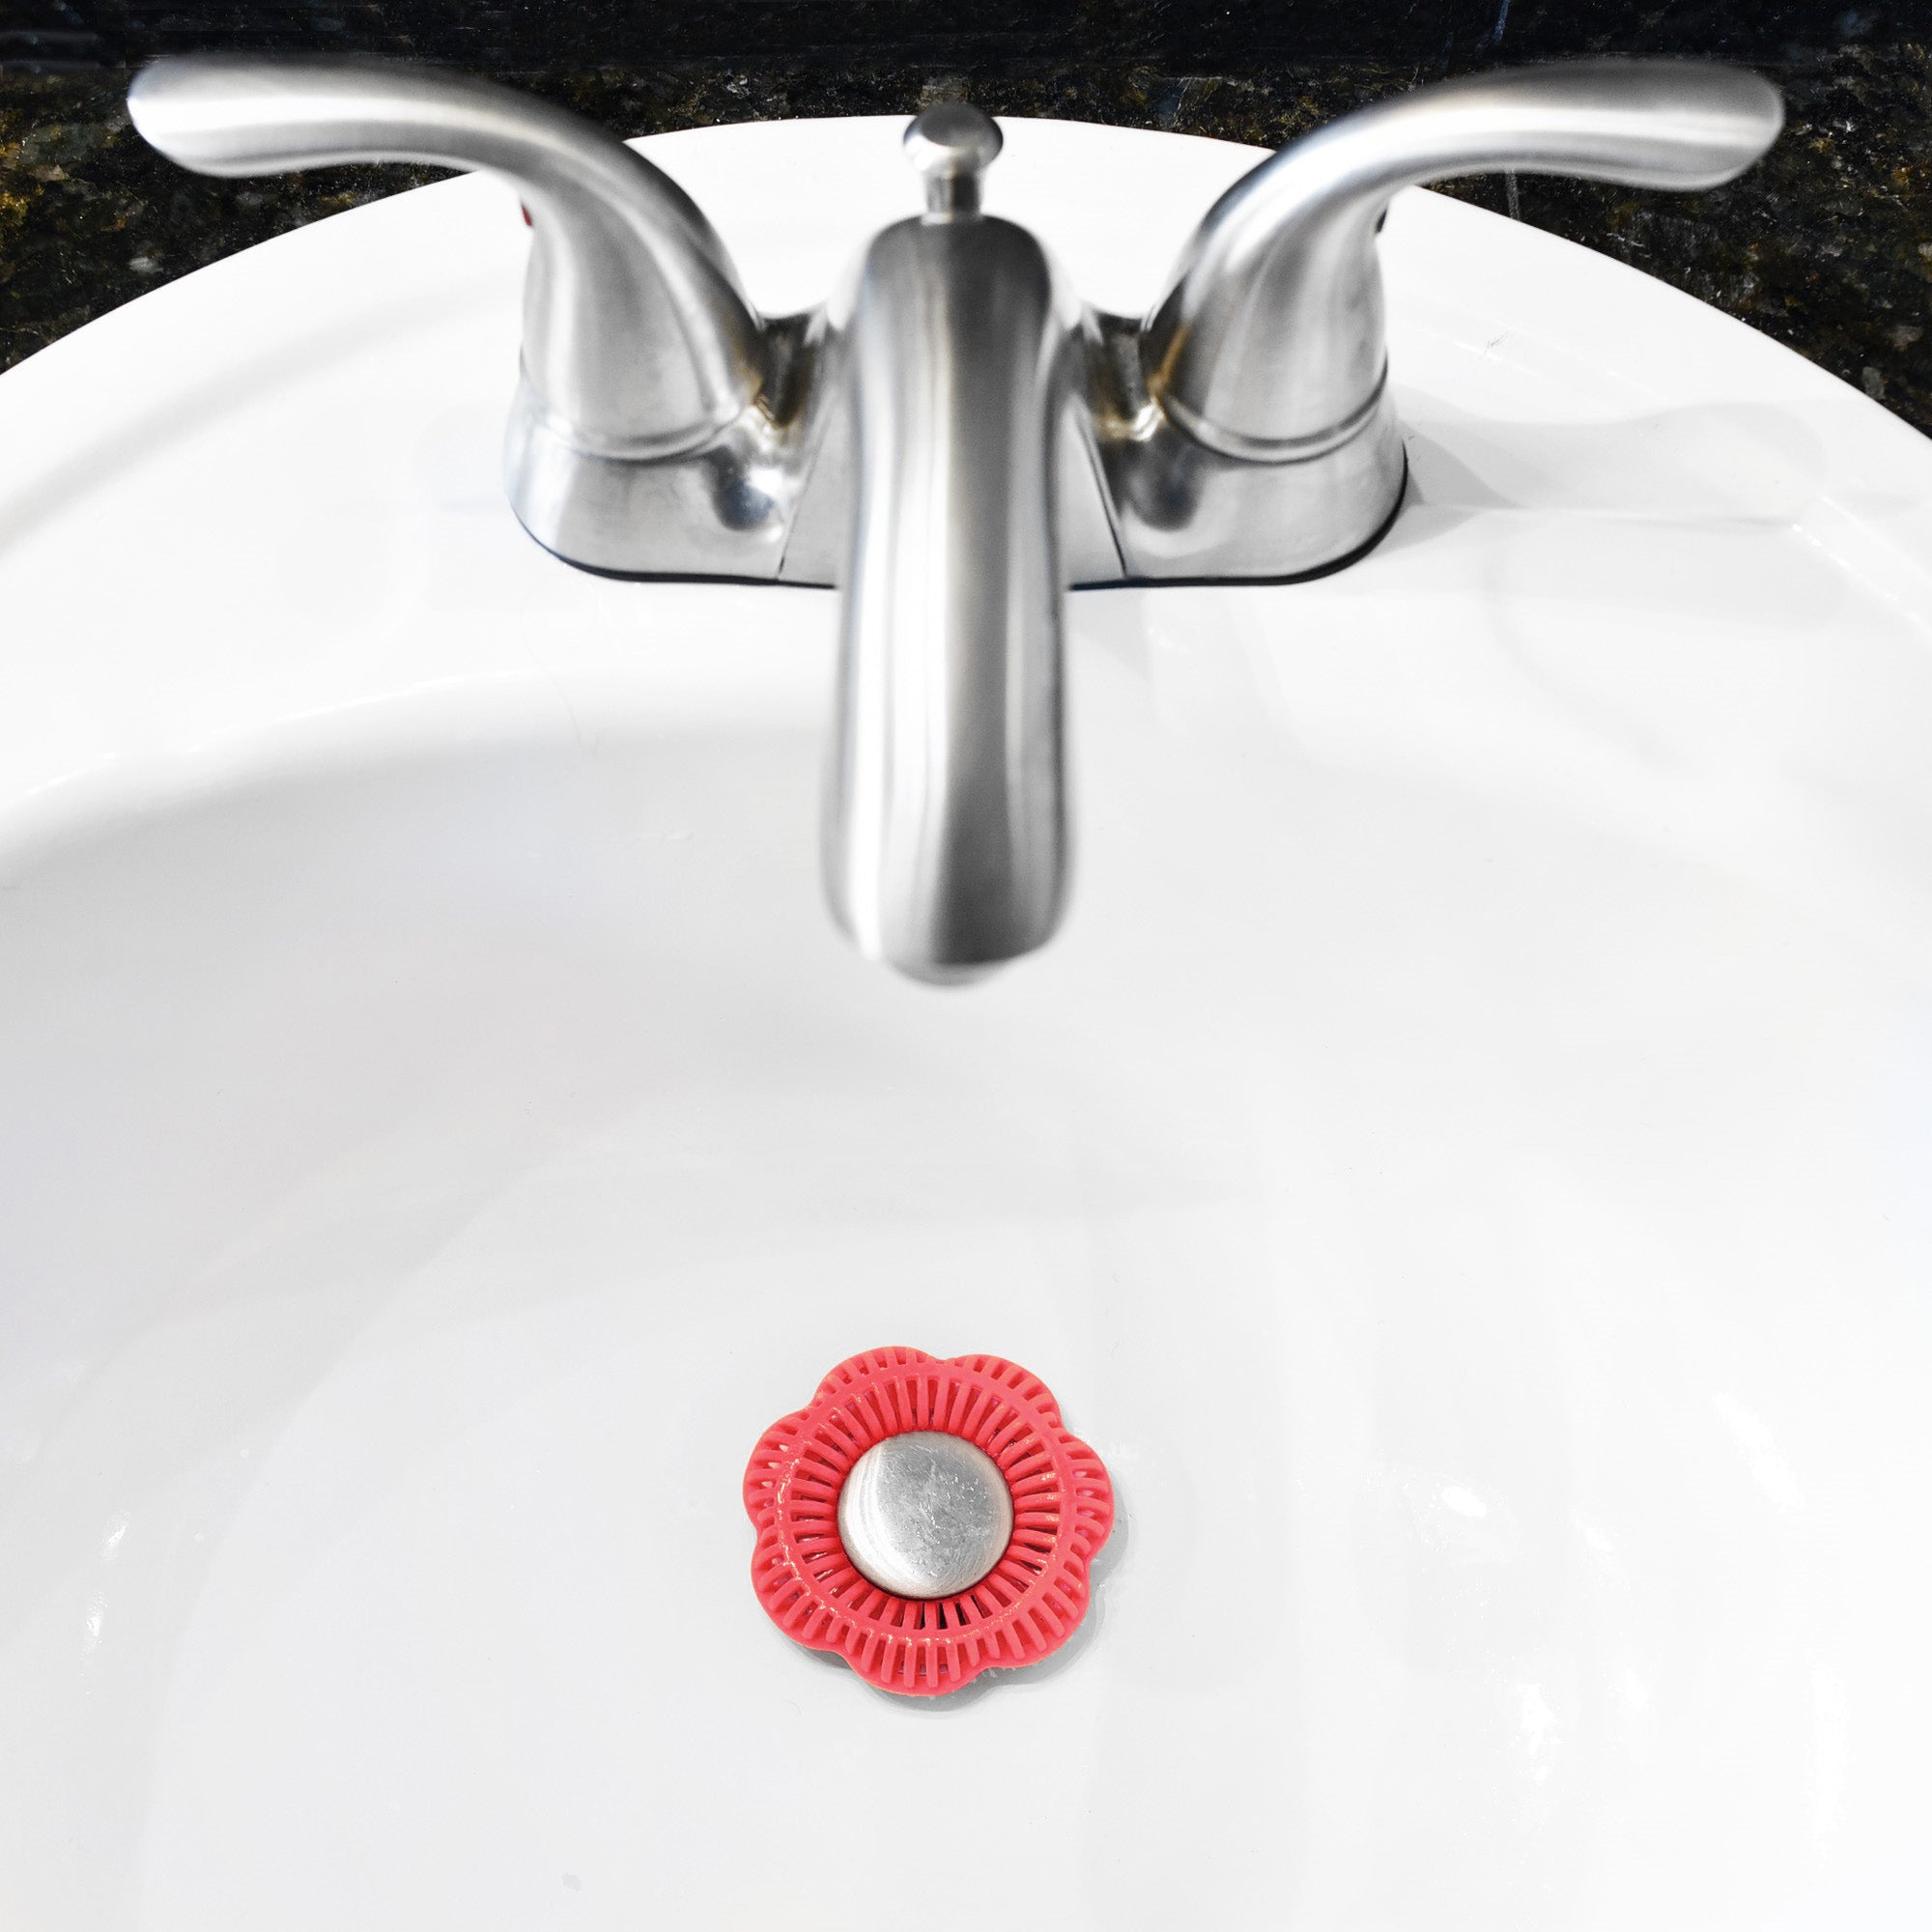 SinkRing, Bathroom Sink Drain Protector - Floral Red